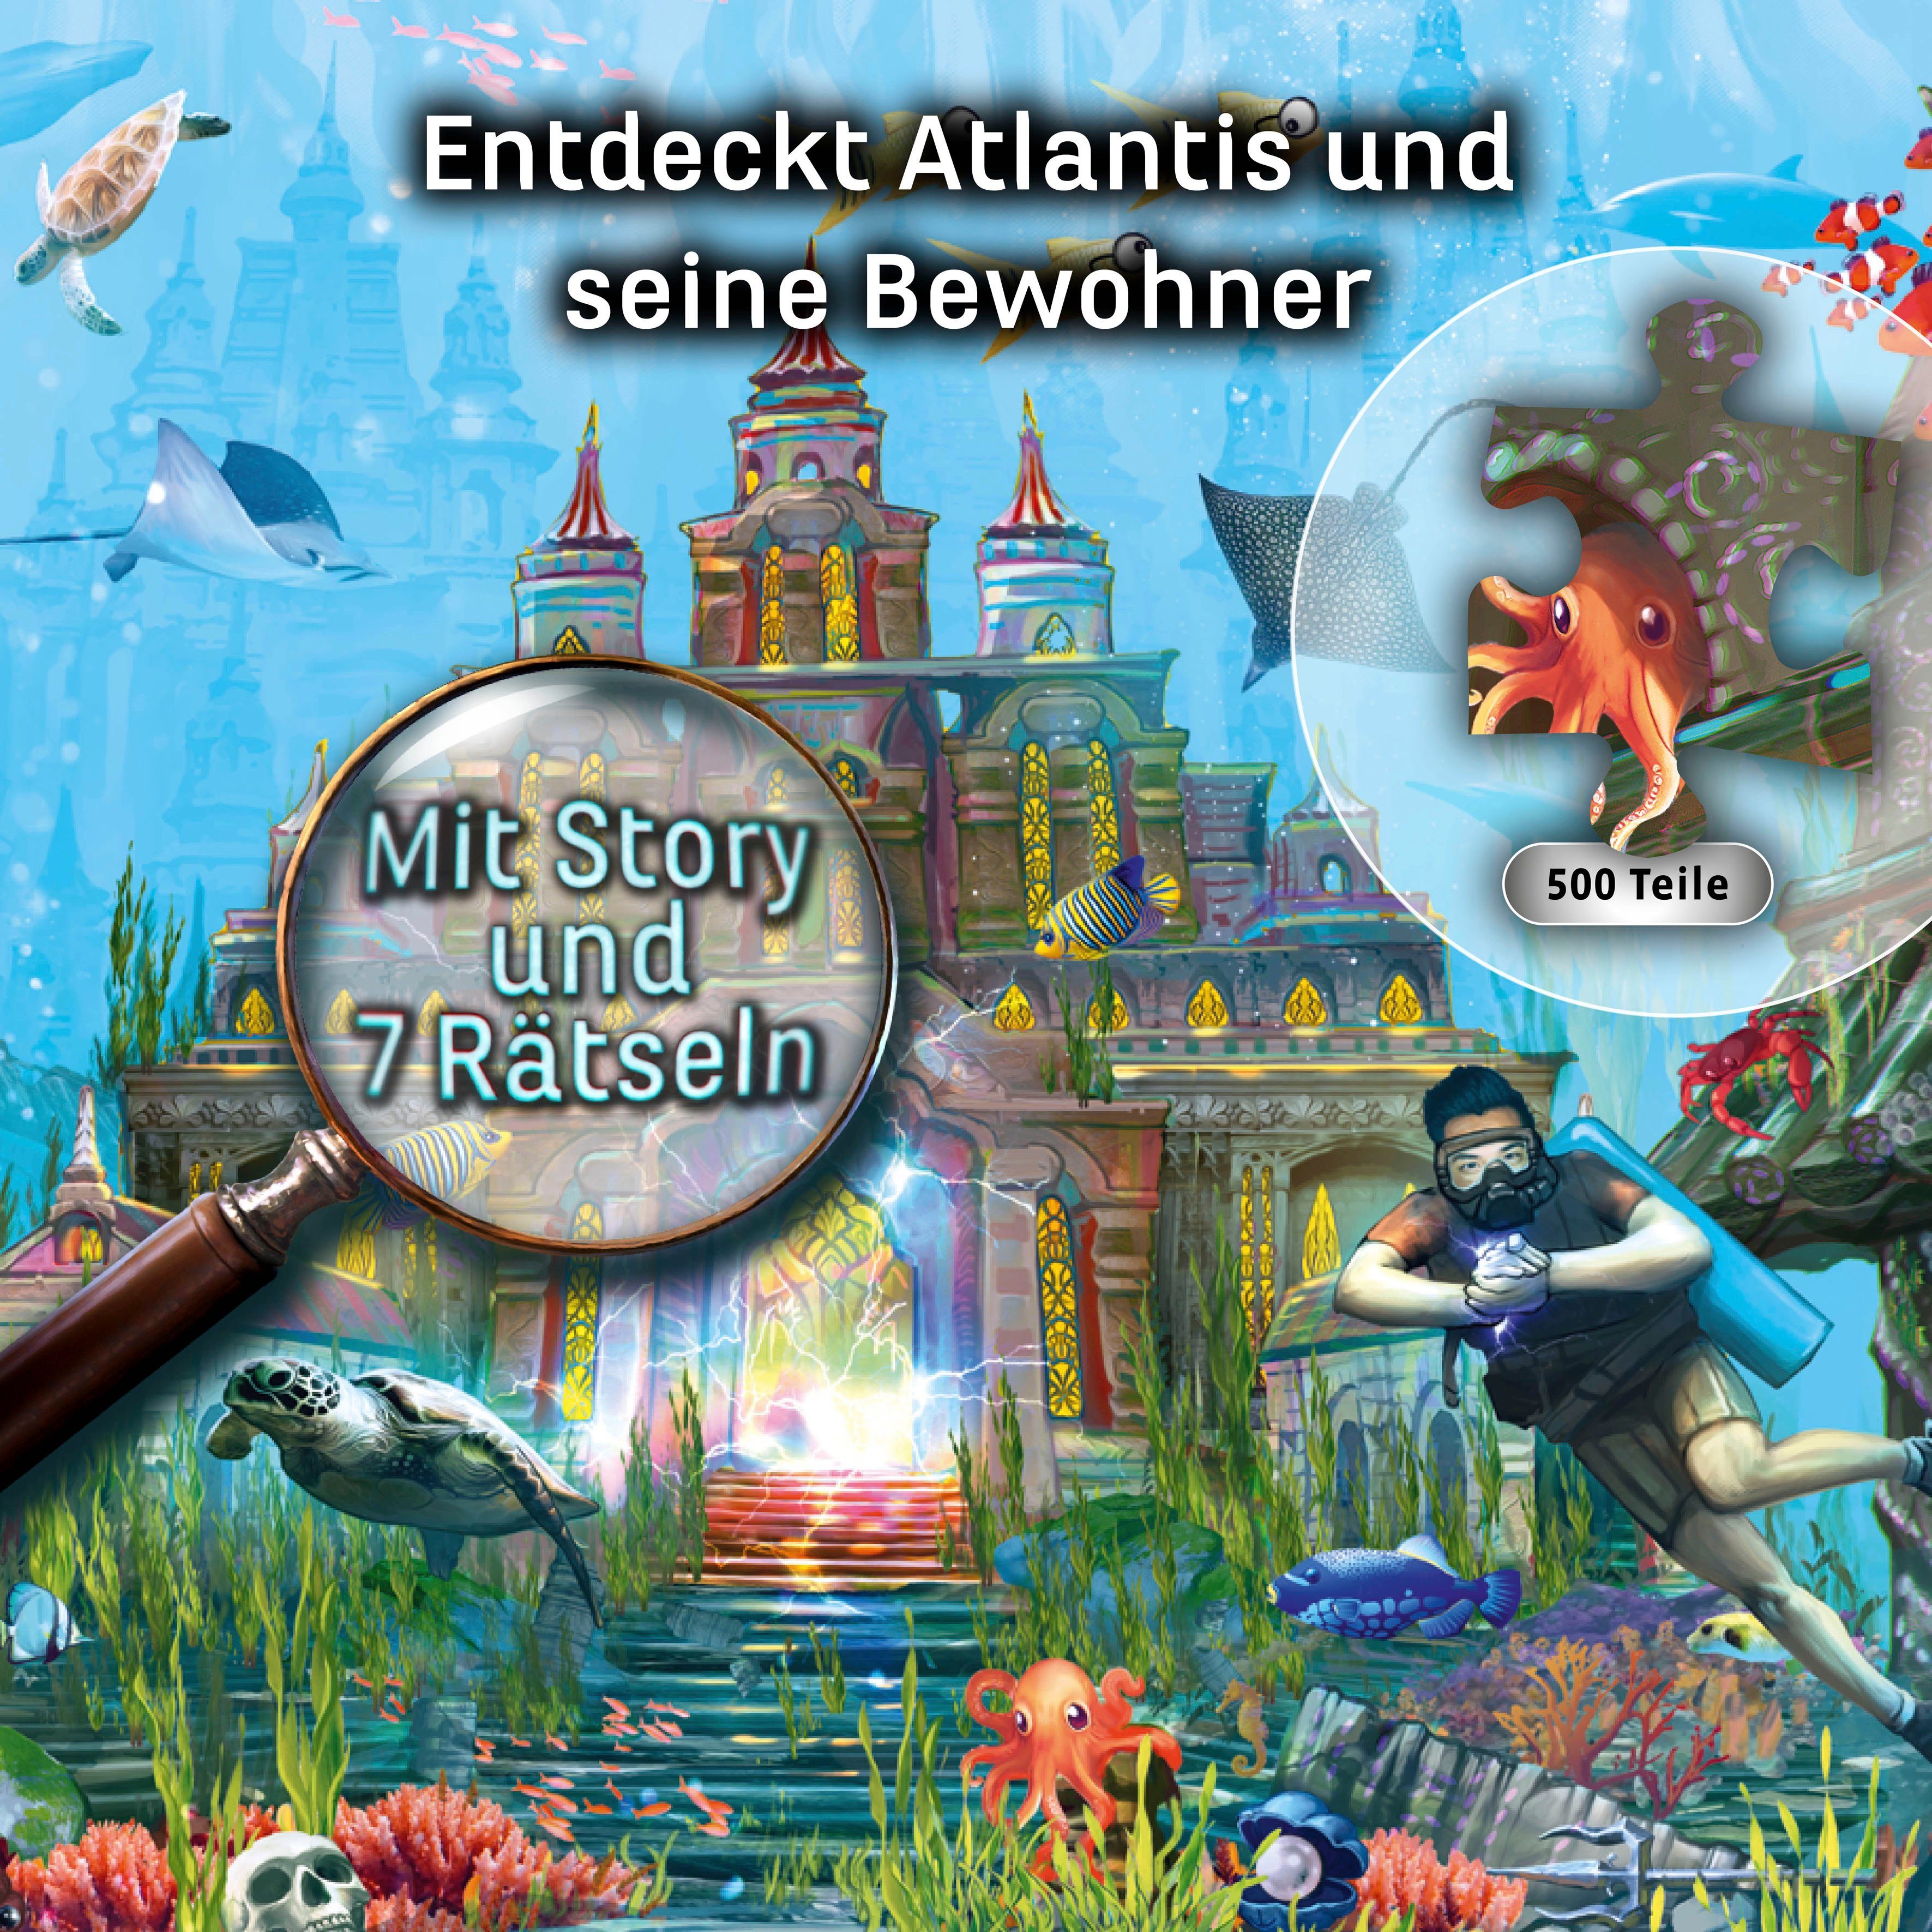 Kosmos Puzzle in EXIT Das 500 Made Puzzle, Schlüssel Der Germany Atlantis, von Puzzleteile